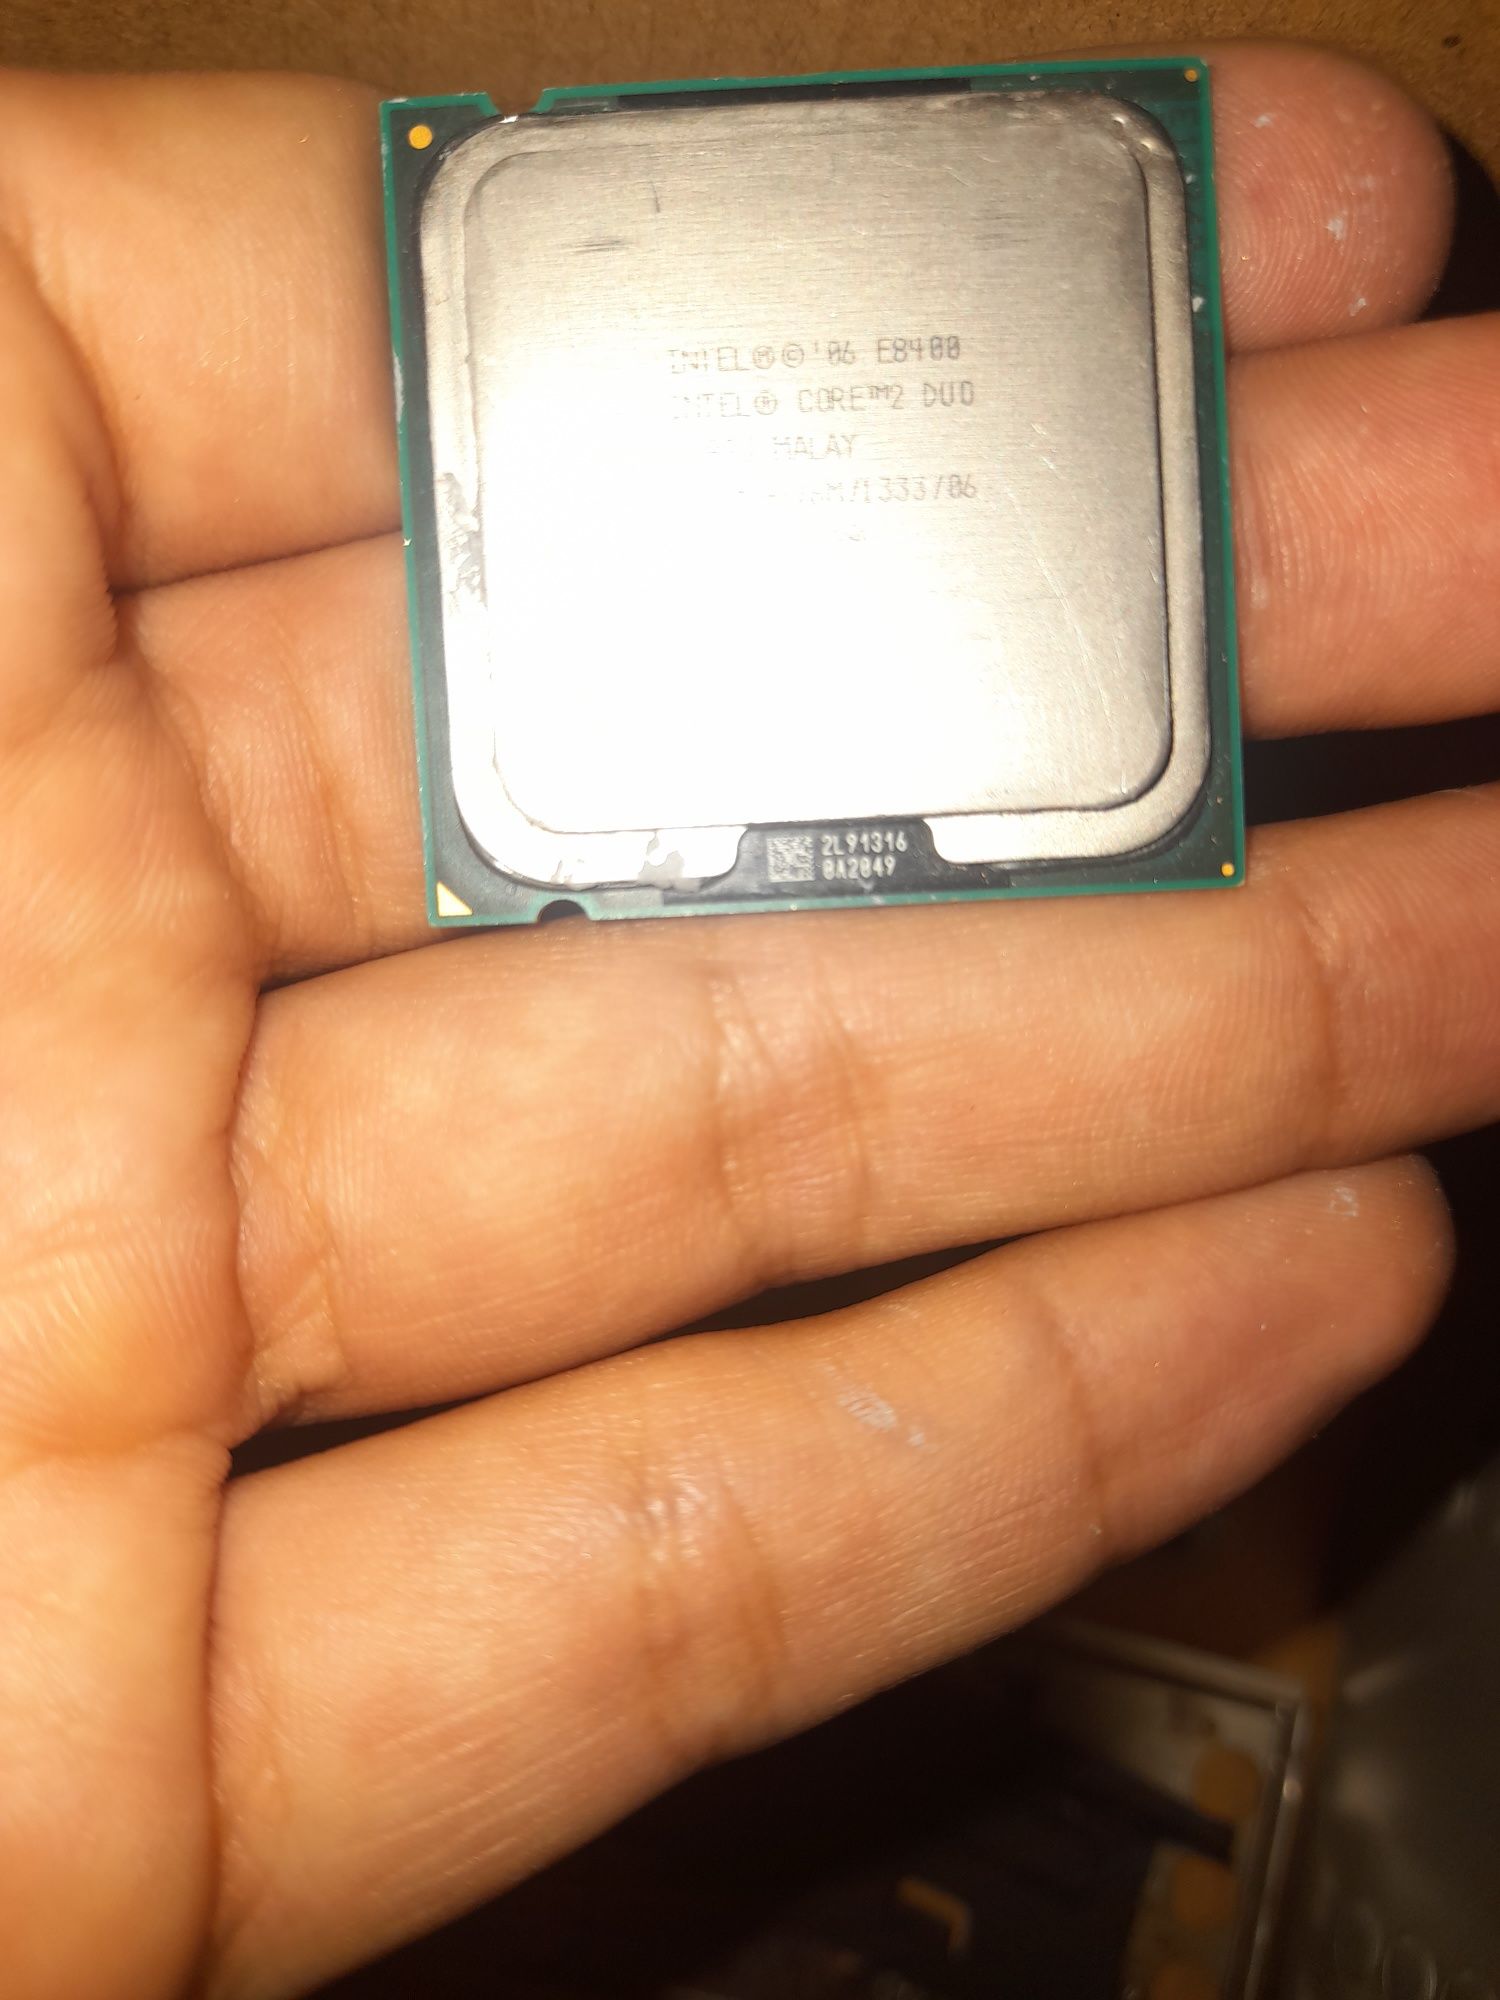 Processador Intel Cor 2 Duo E8400 3.0 Ghz